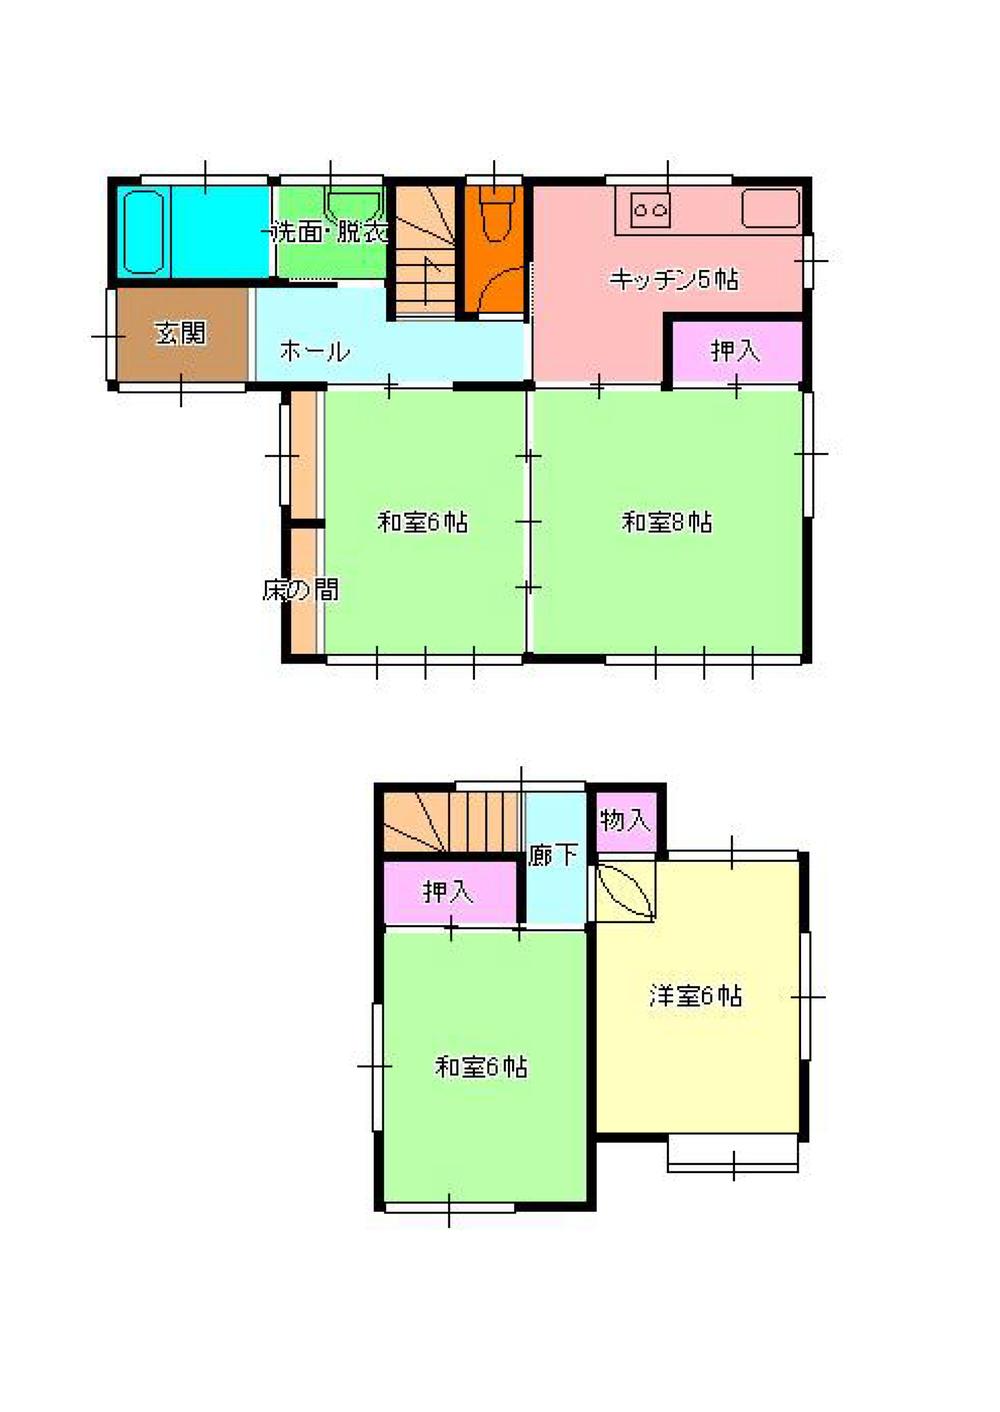 Floor plan. 7.3 million yen, 4K, Land area 100.25 sq m , Building area 75.33 sq m